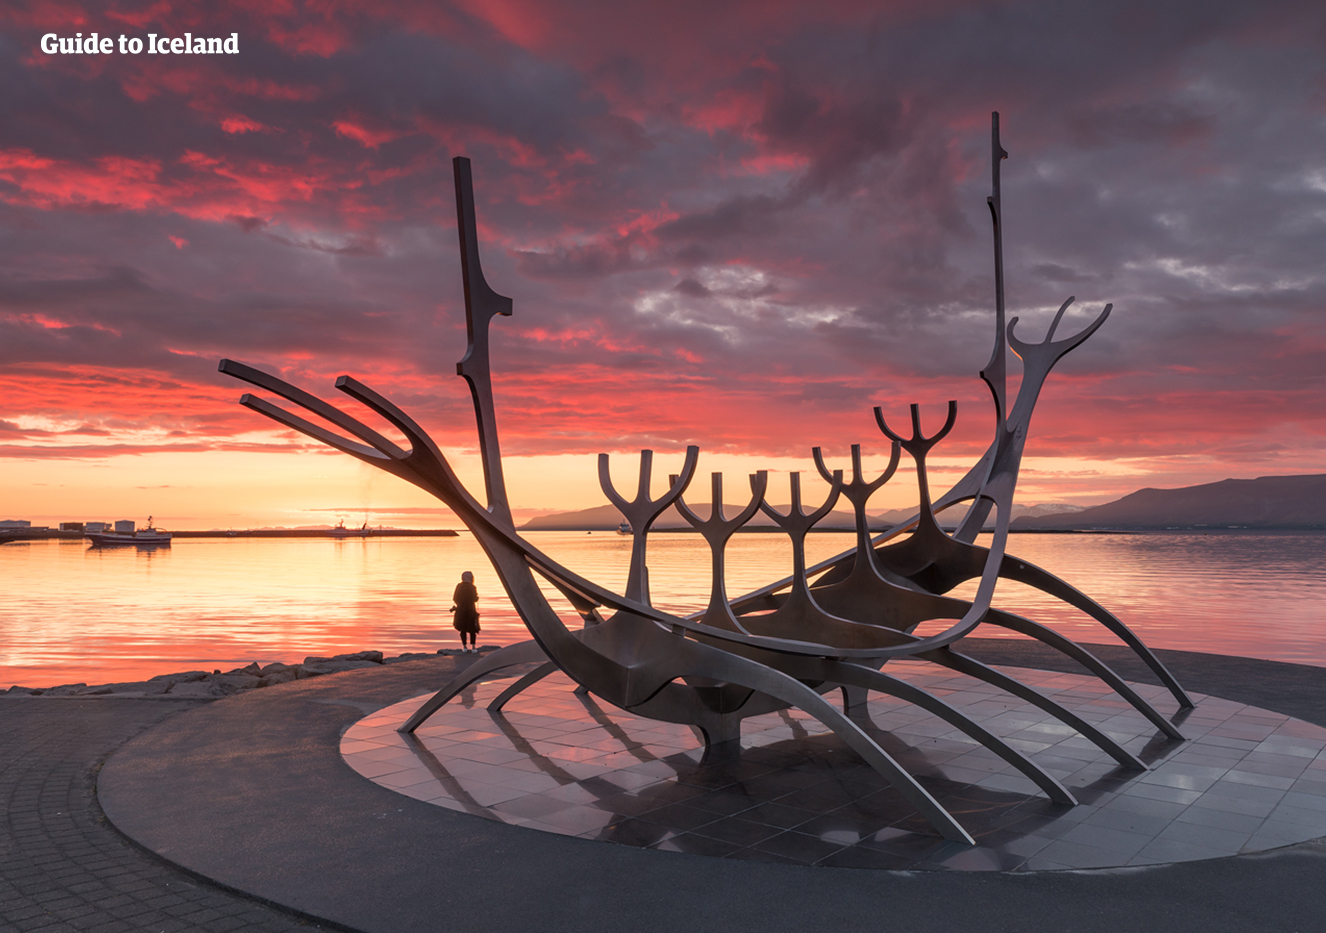 선 보야저는 레이캬비크에 설치된 예술조형물로 그 가치를 논할 수 없을 만큼 값진 아이슬란드 수도의 자산입니다.